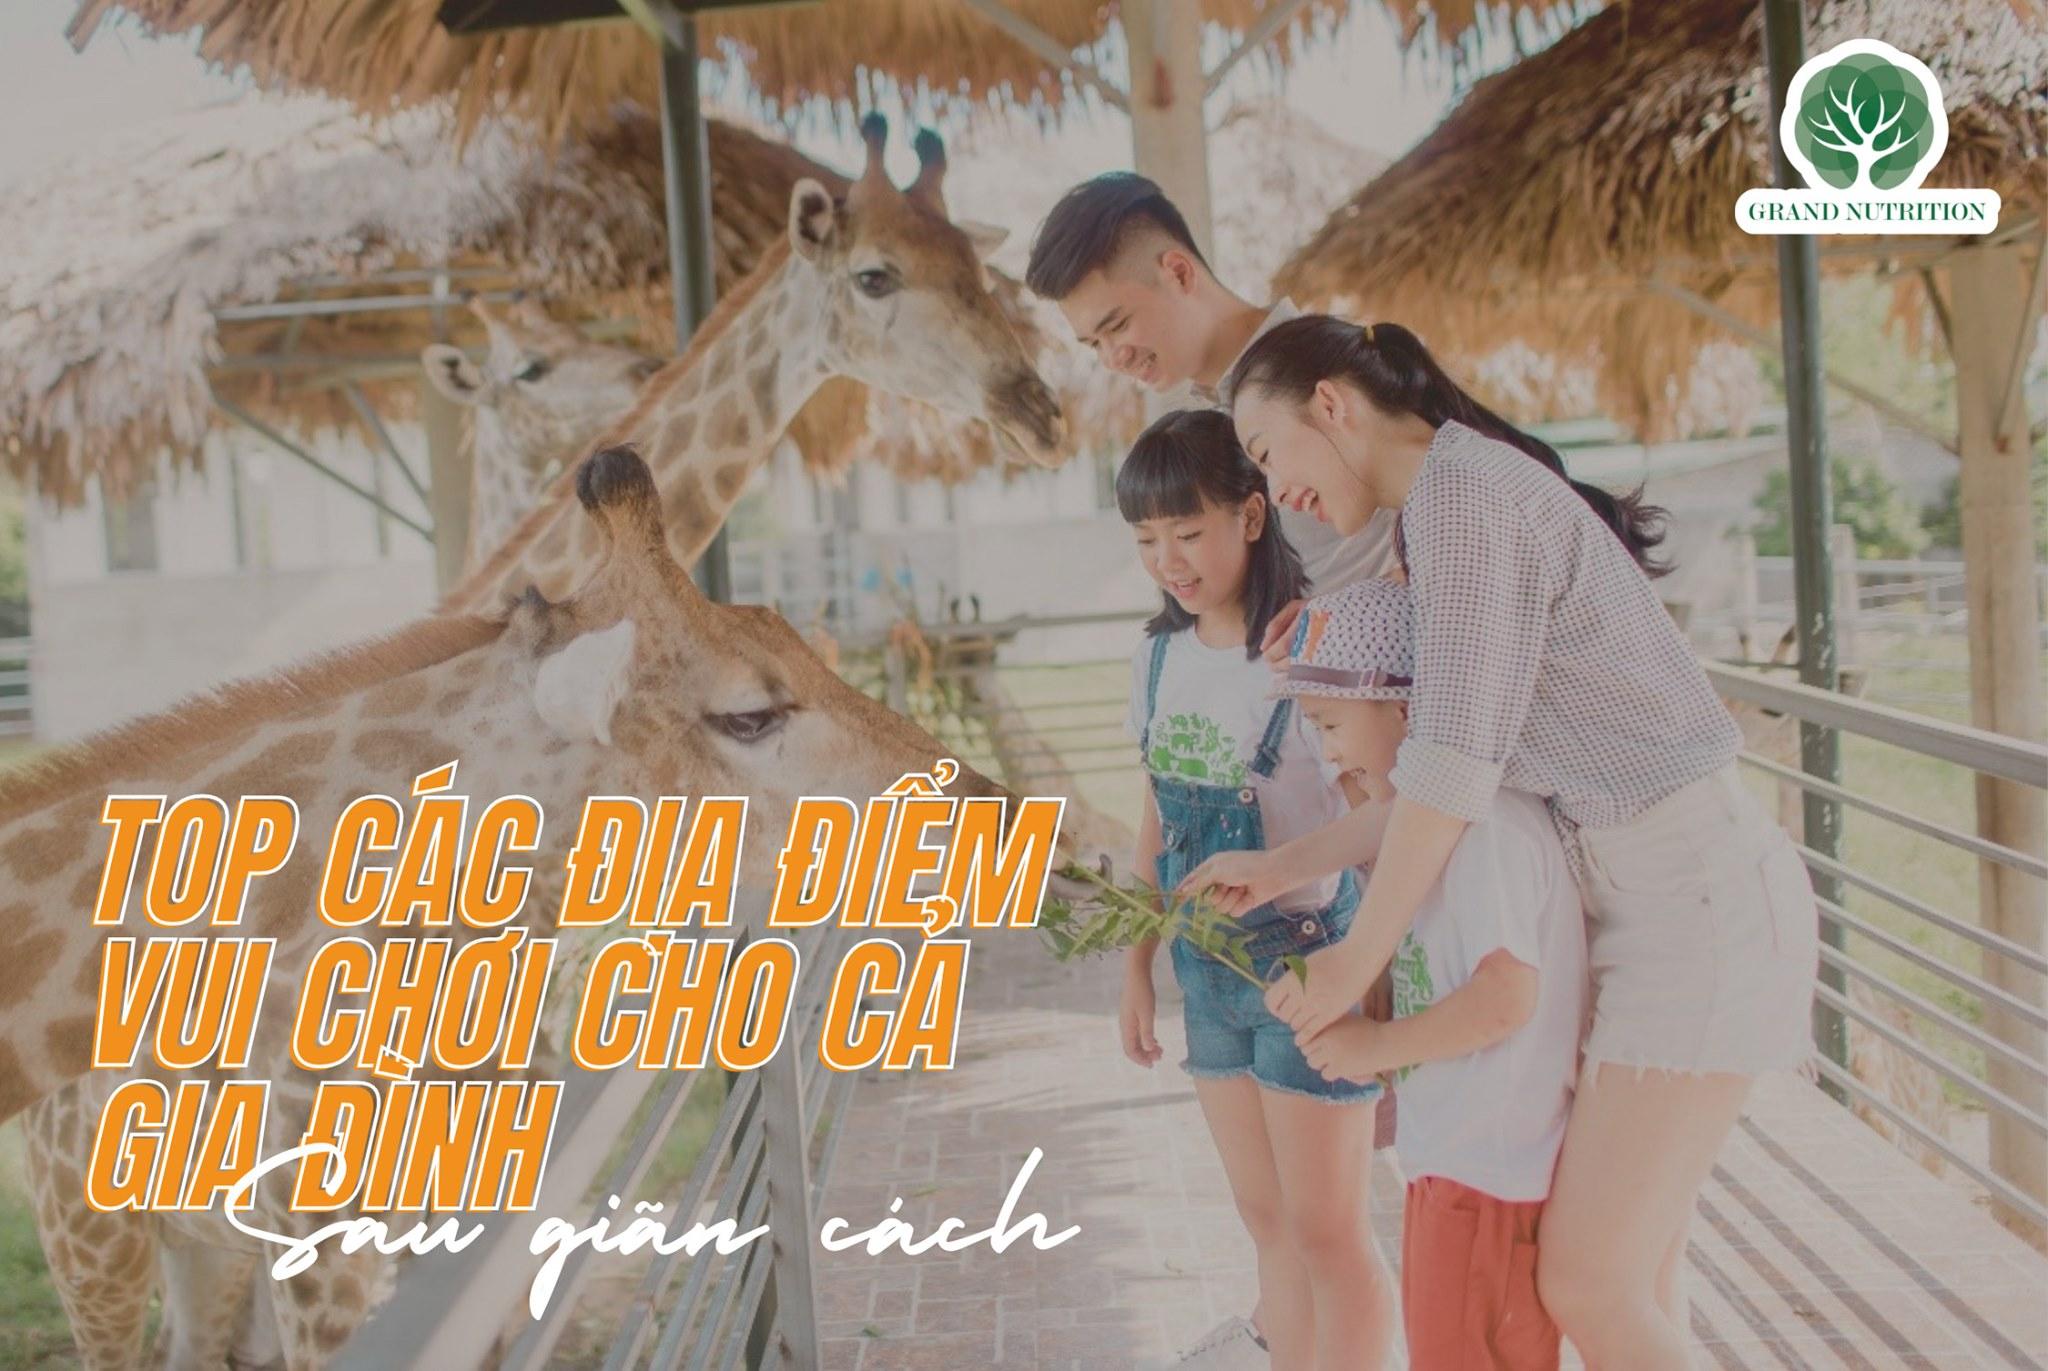 TOP 5 địa điểm vui chơi ở Hà Nội sau giãn cách an toàn cho cả gia đình